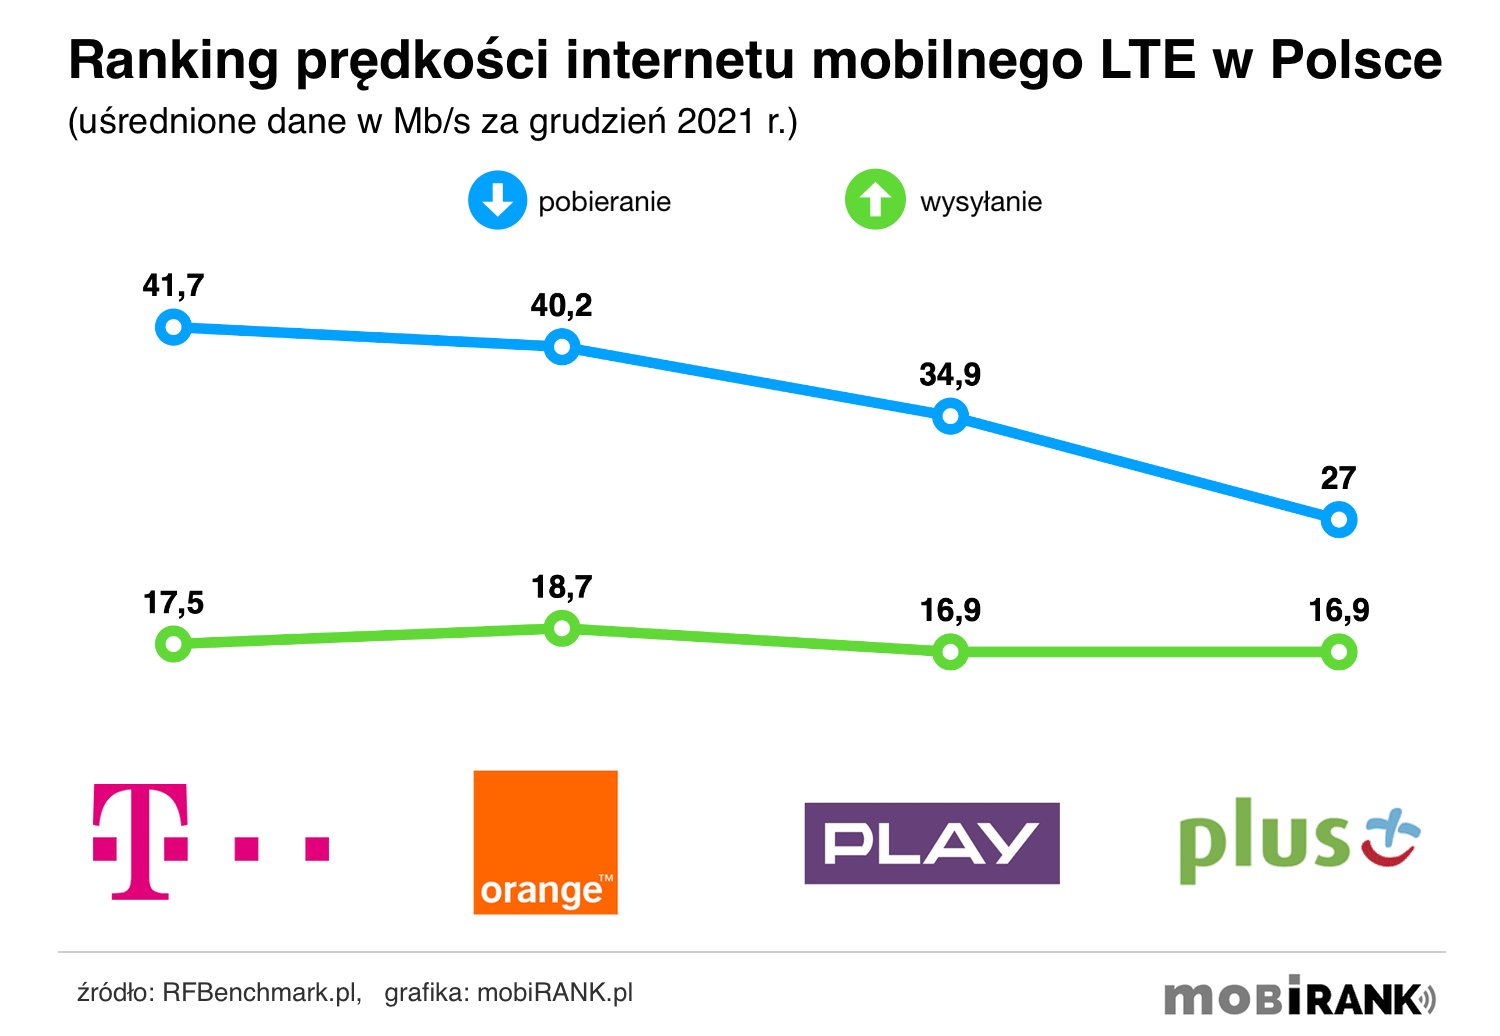 Ranking prędkości internetu mobilnego LTE w Polsce w grudniu 2021 roku